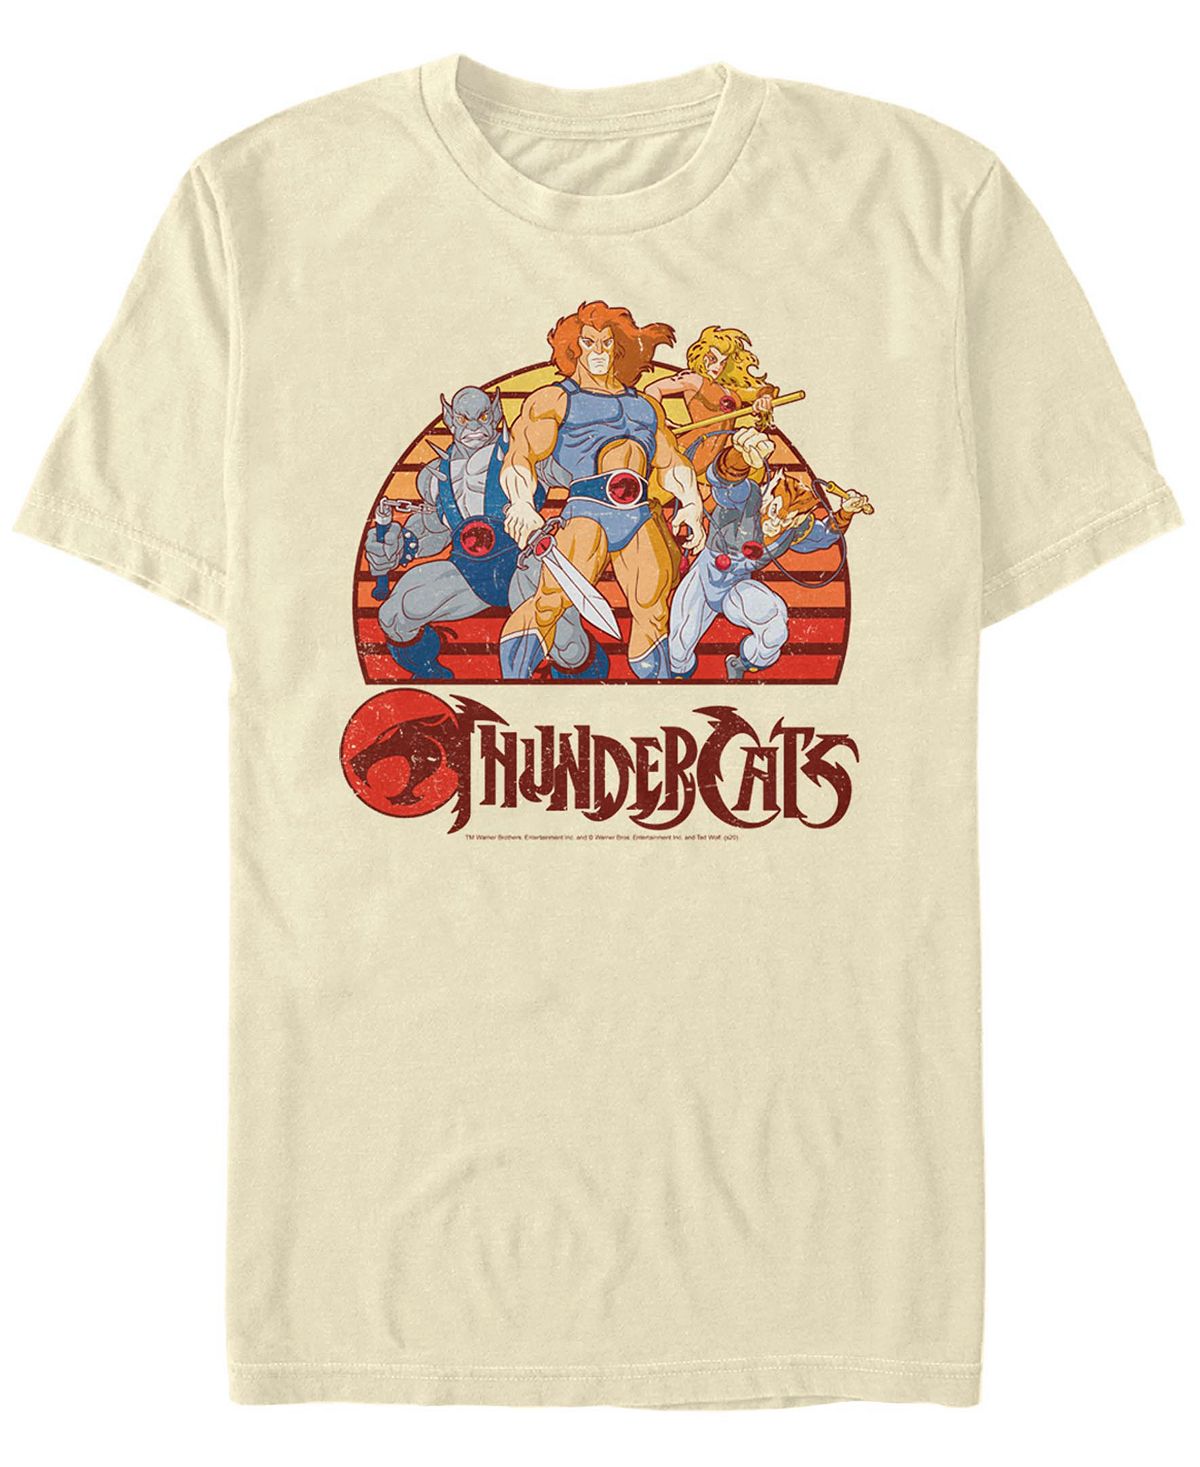 Мужская футболка thundercats group retro sunset с коротким рукавом Fifth Sun thundercat thundercat the golden age of apocalypse